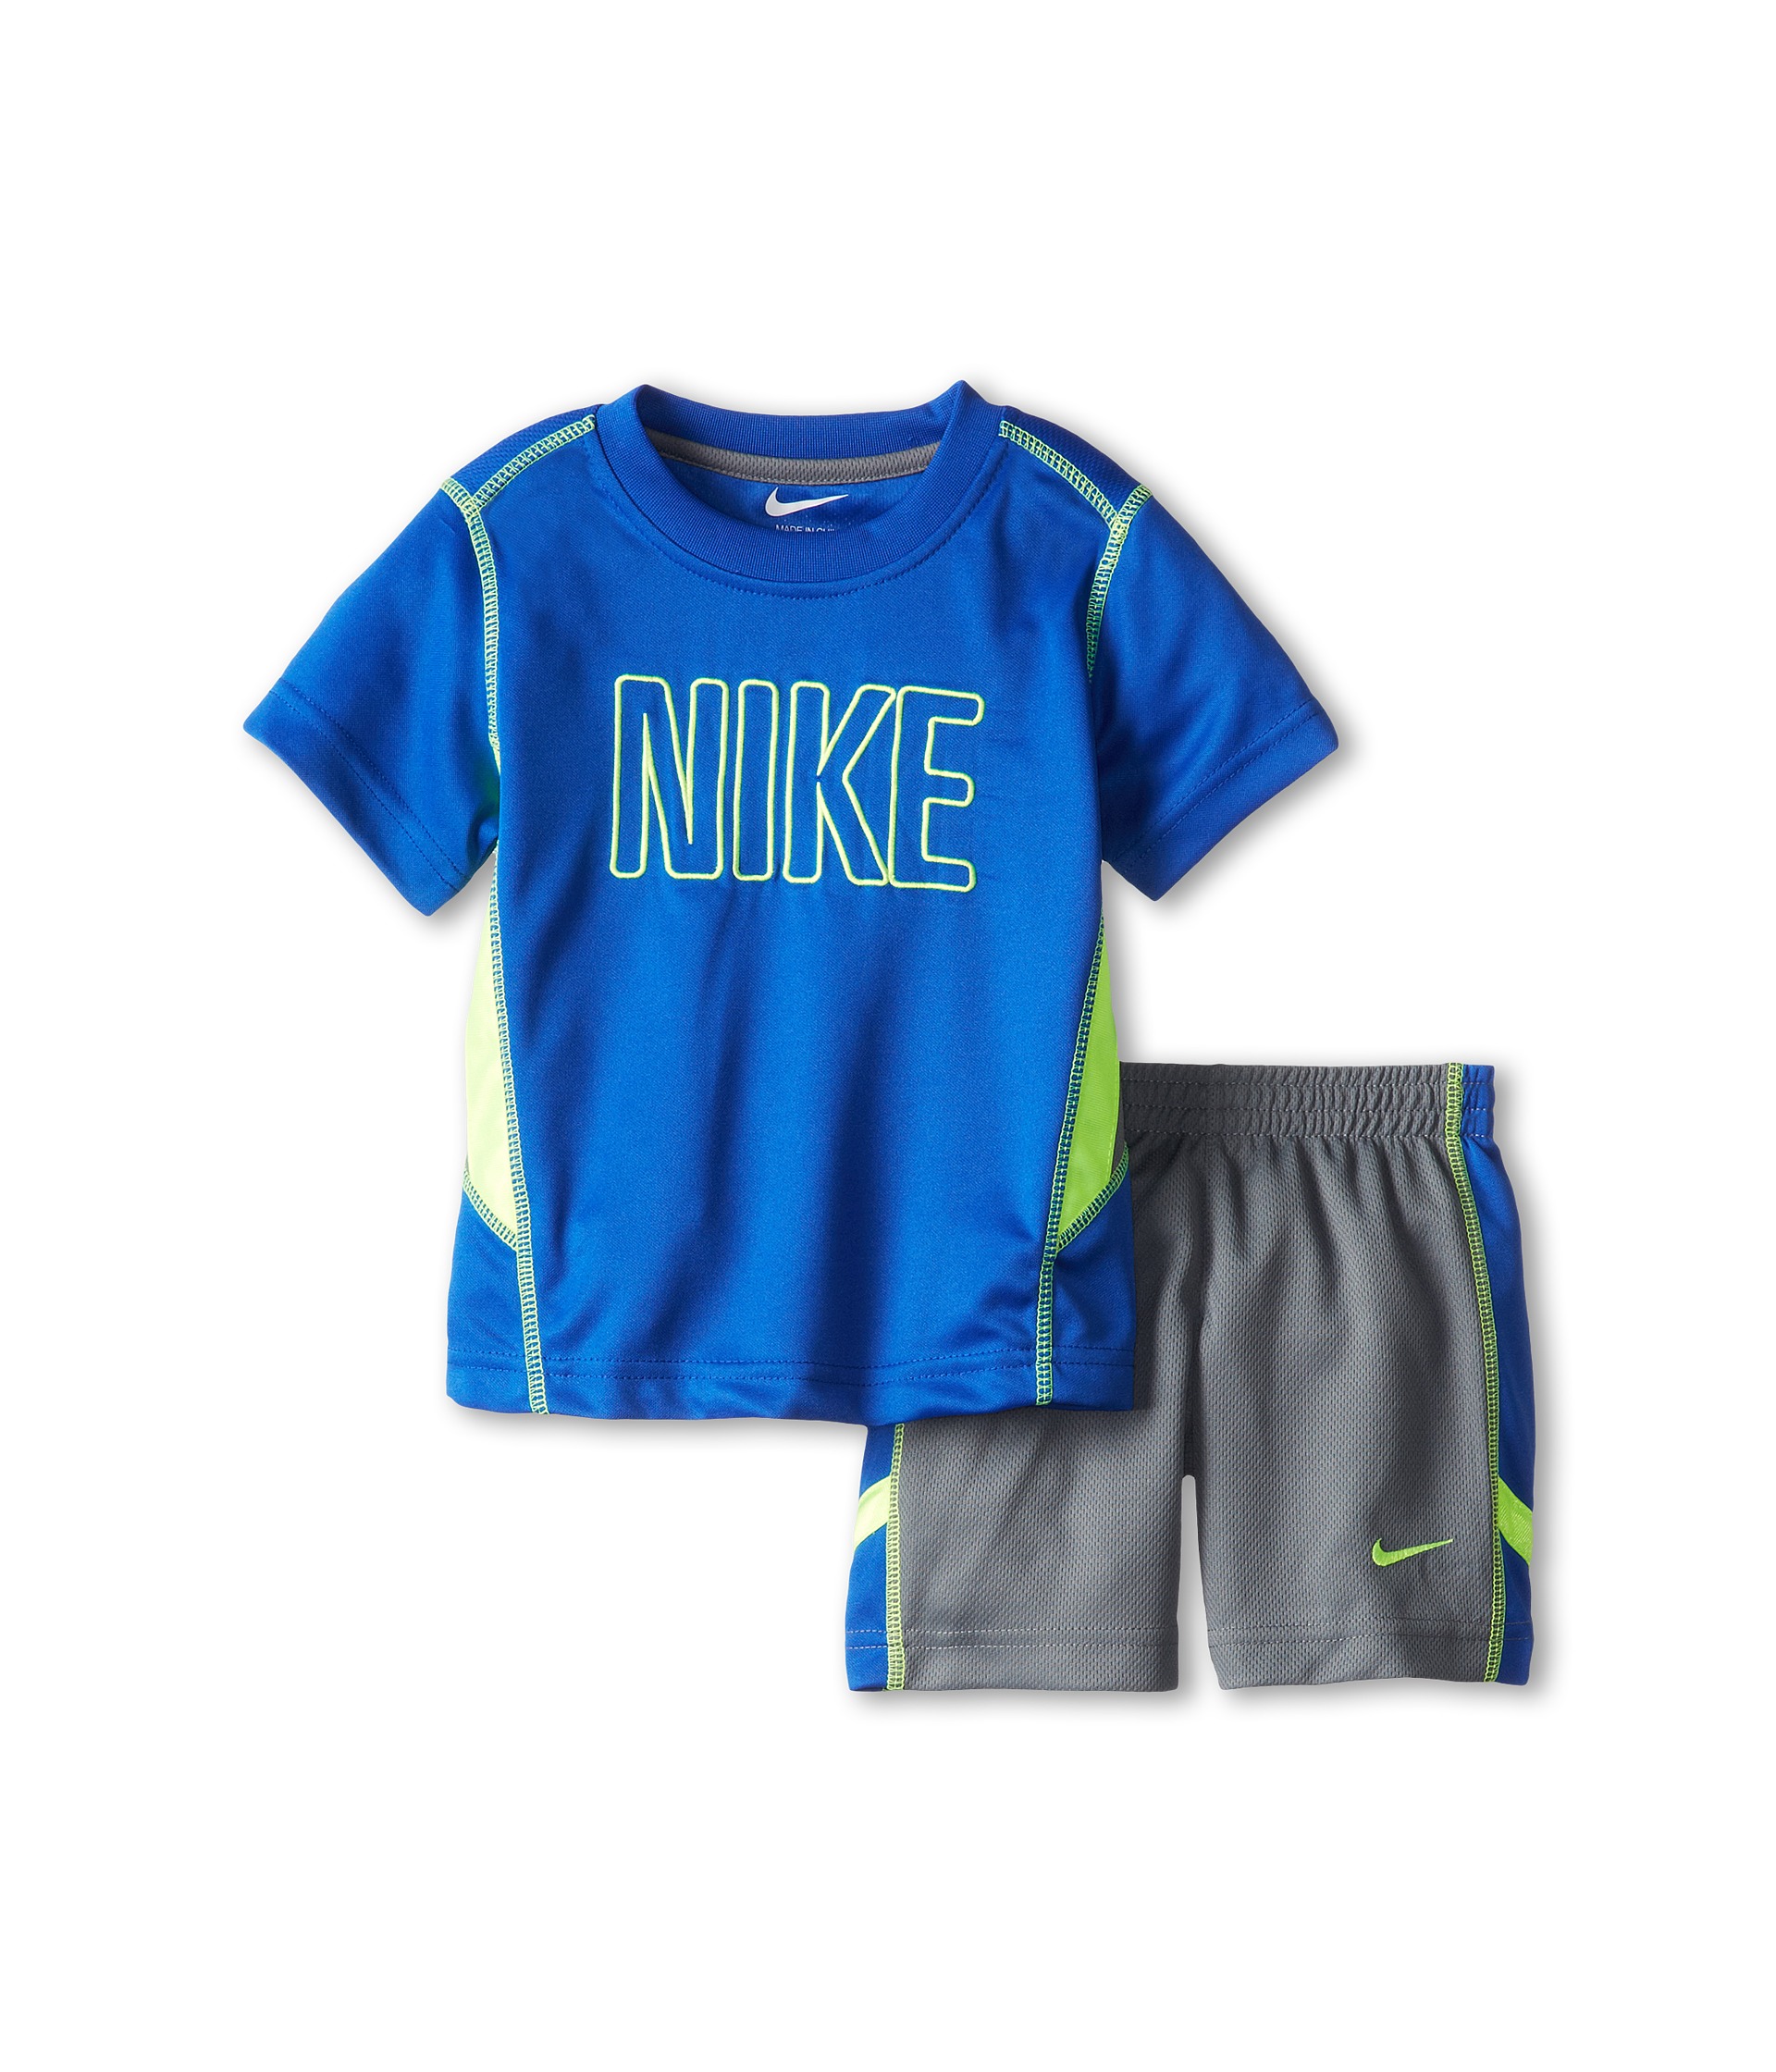 Nike Kids Nike N45 Mesh Short Set Toddler